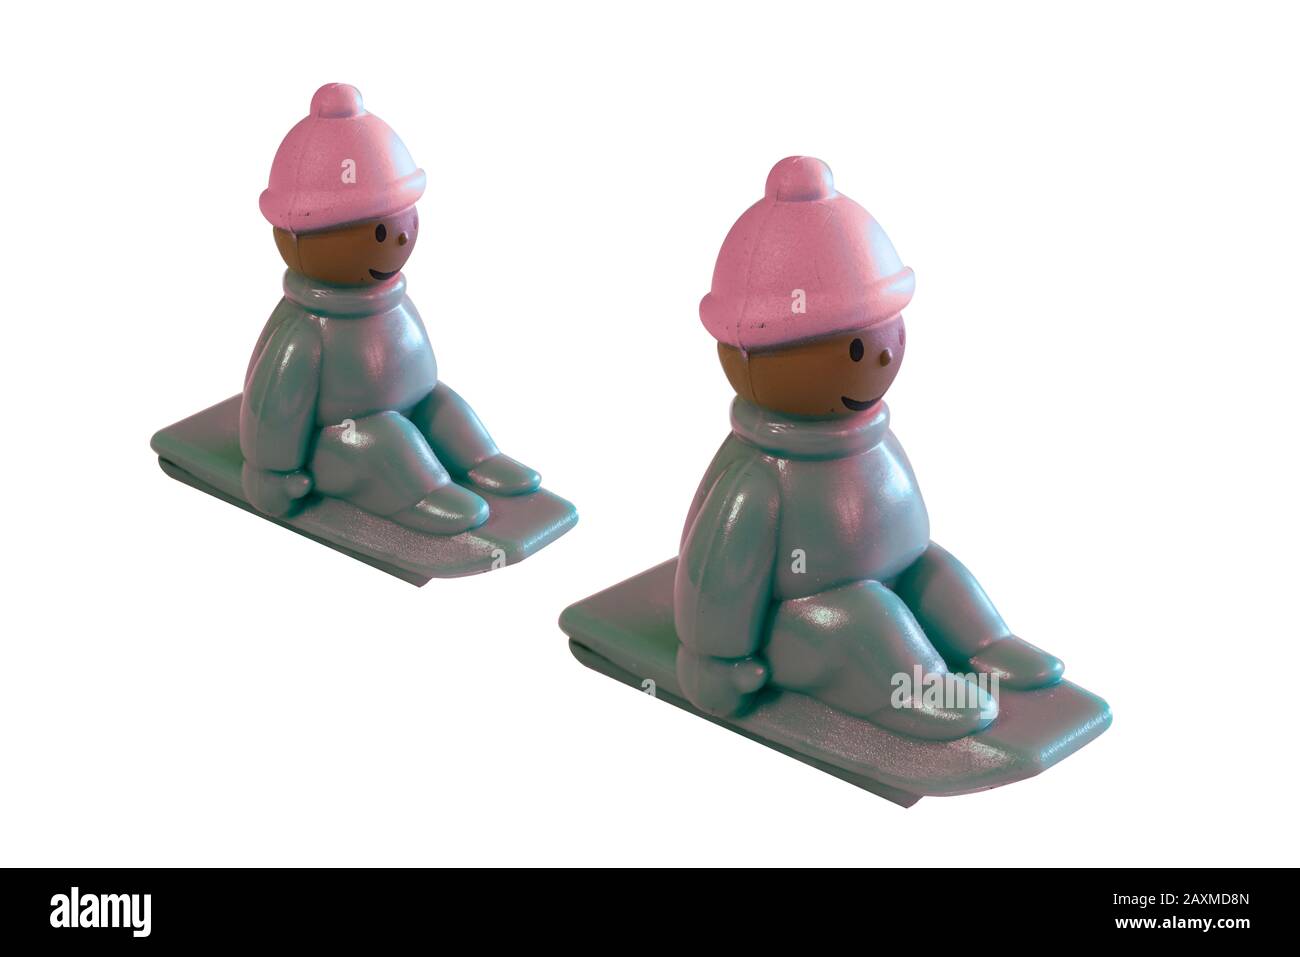 Kleines buntes Spielzeug für kleine Kinder eines Kindes, das auf einem Schlitten sitzt, der den Hügel hinuntergeht, mit einem Hut gegen die Kälte und den Fäusten, die eng am sitzen Stockfoto